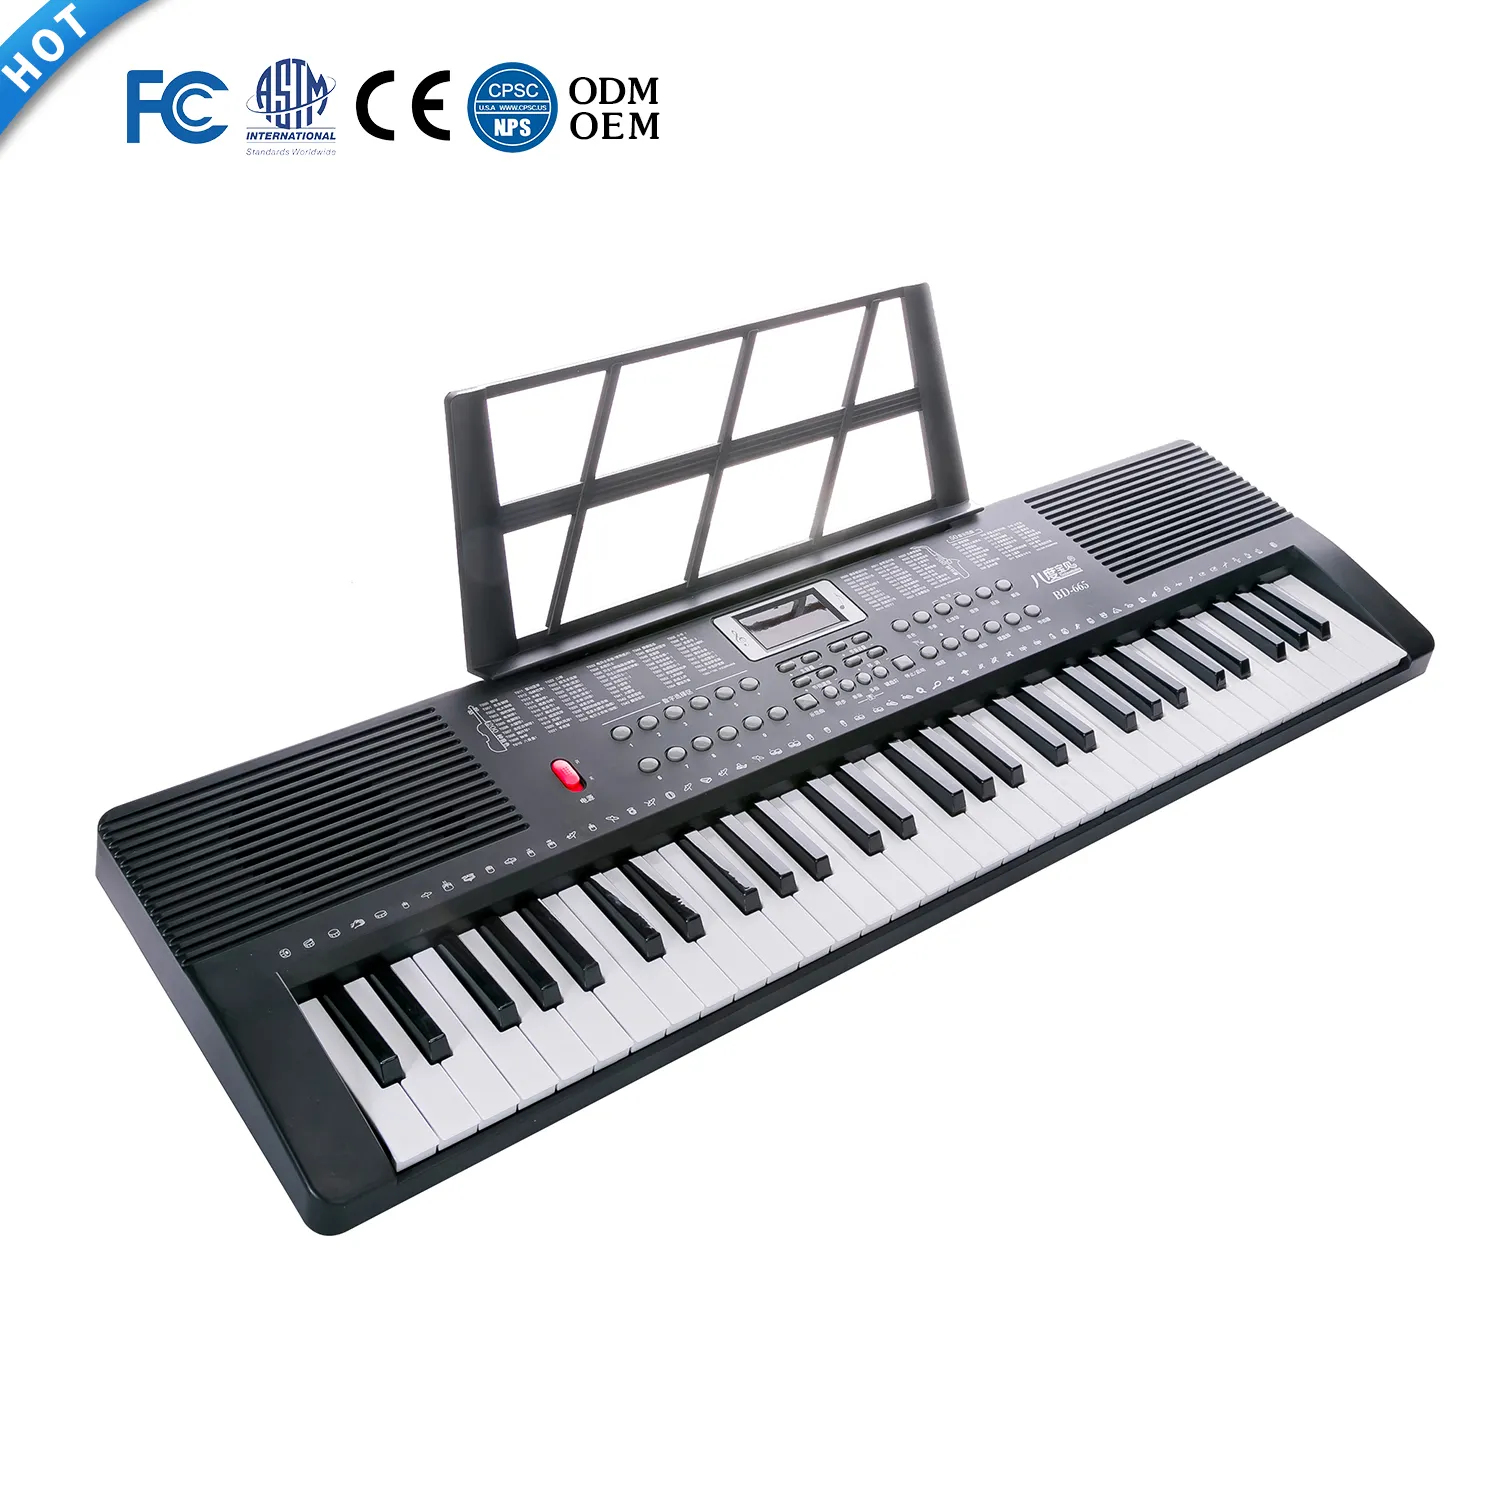 Instrumentos musicales de la mejor calidad, grabadora USB, instrumento de Piano, sintetizador, Teclado electrónico Musical, en venta